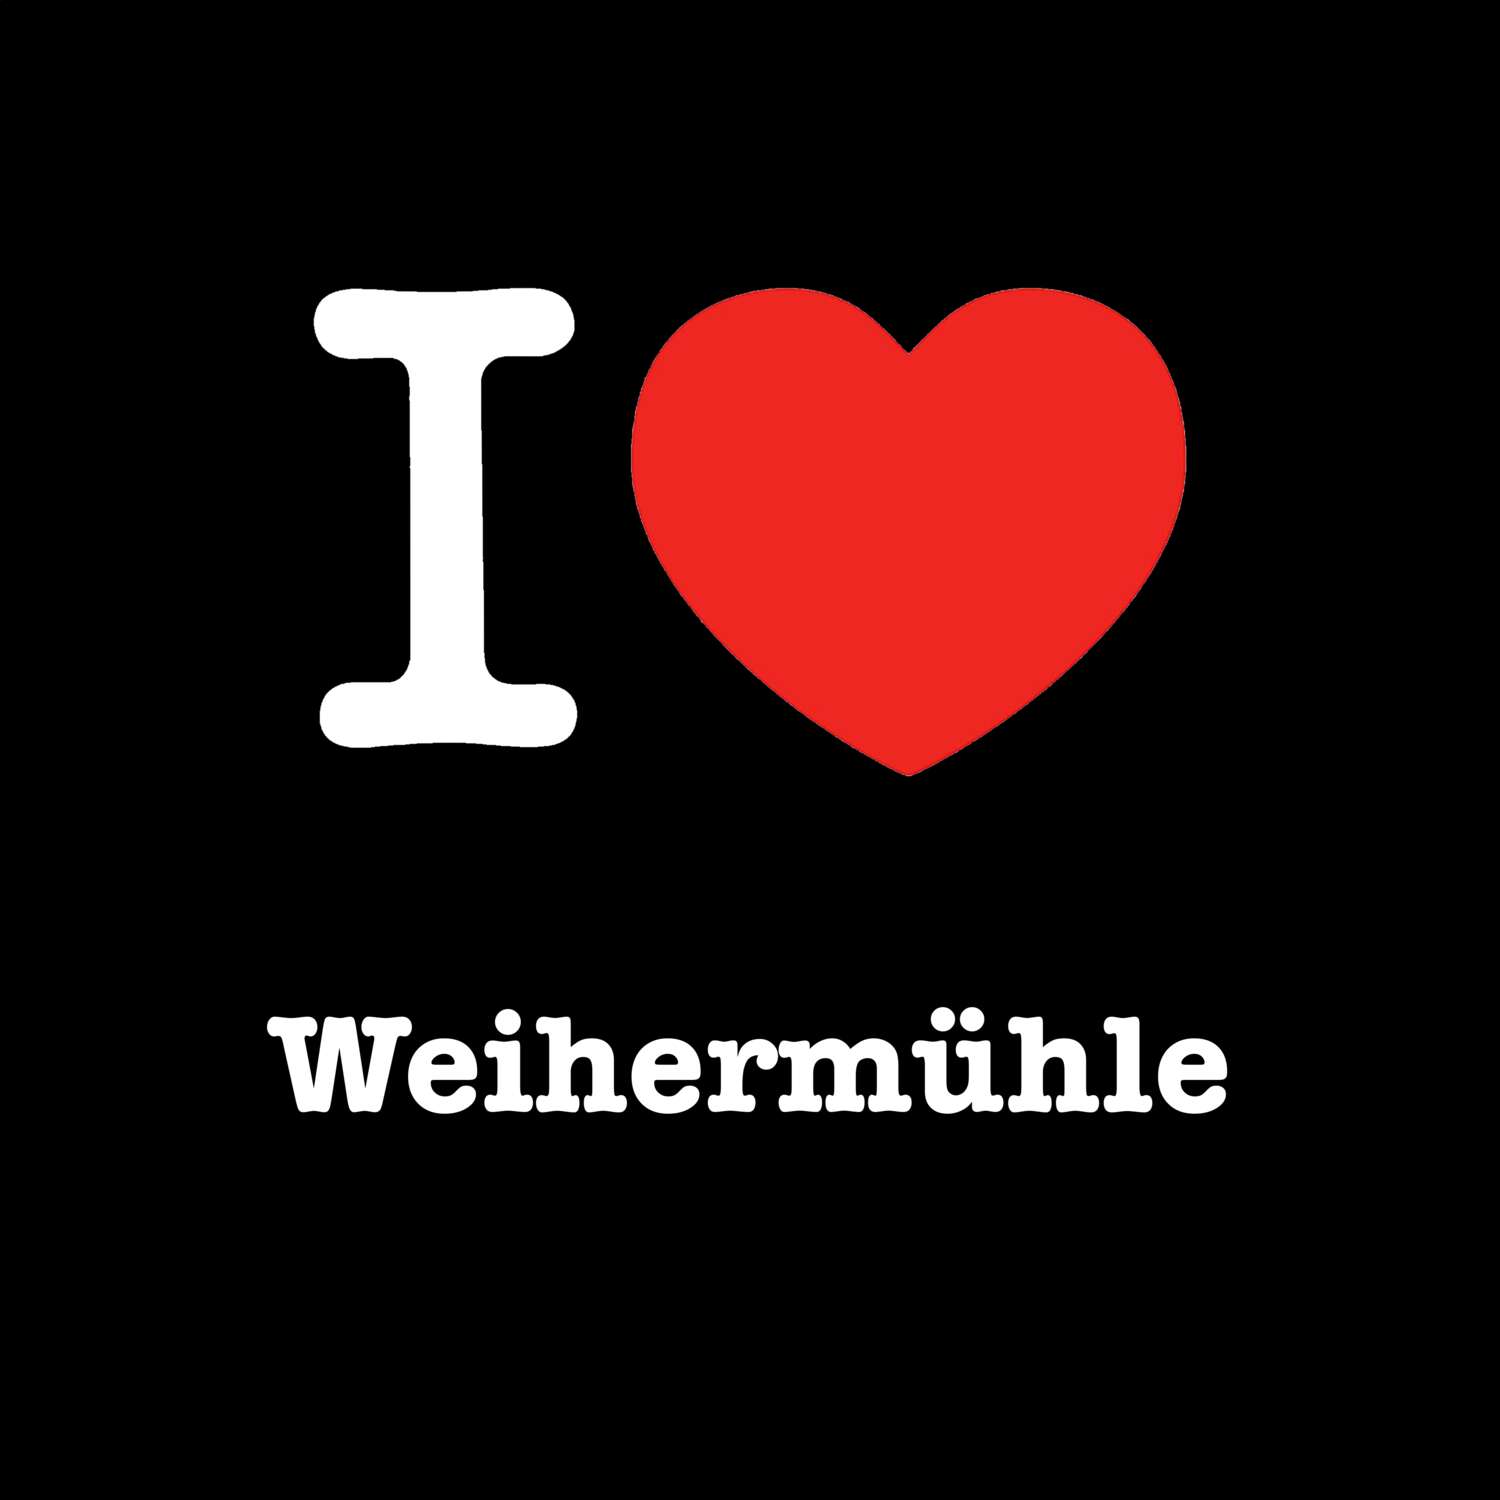 Weihermühle T-Shirt »I love«